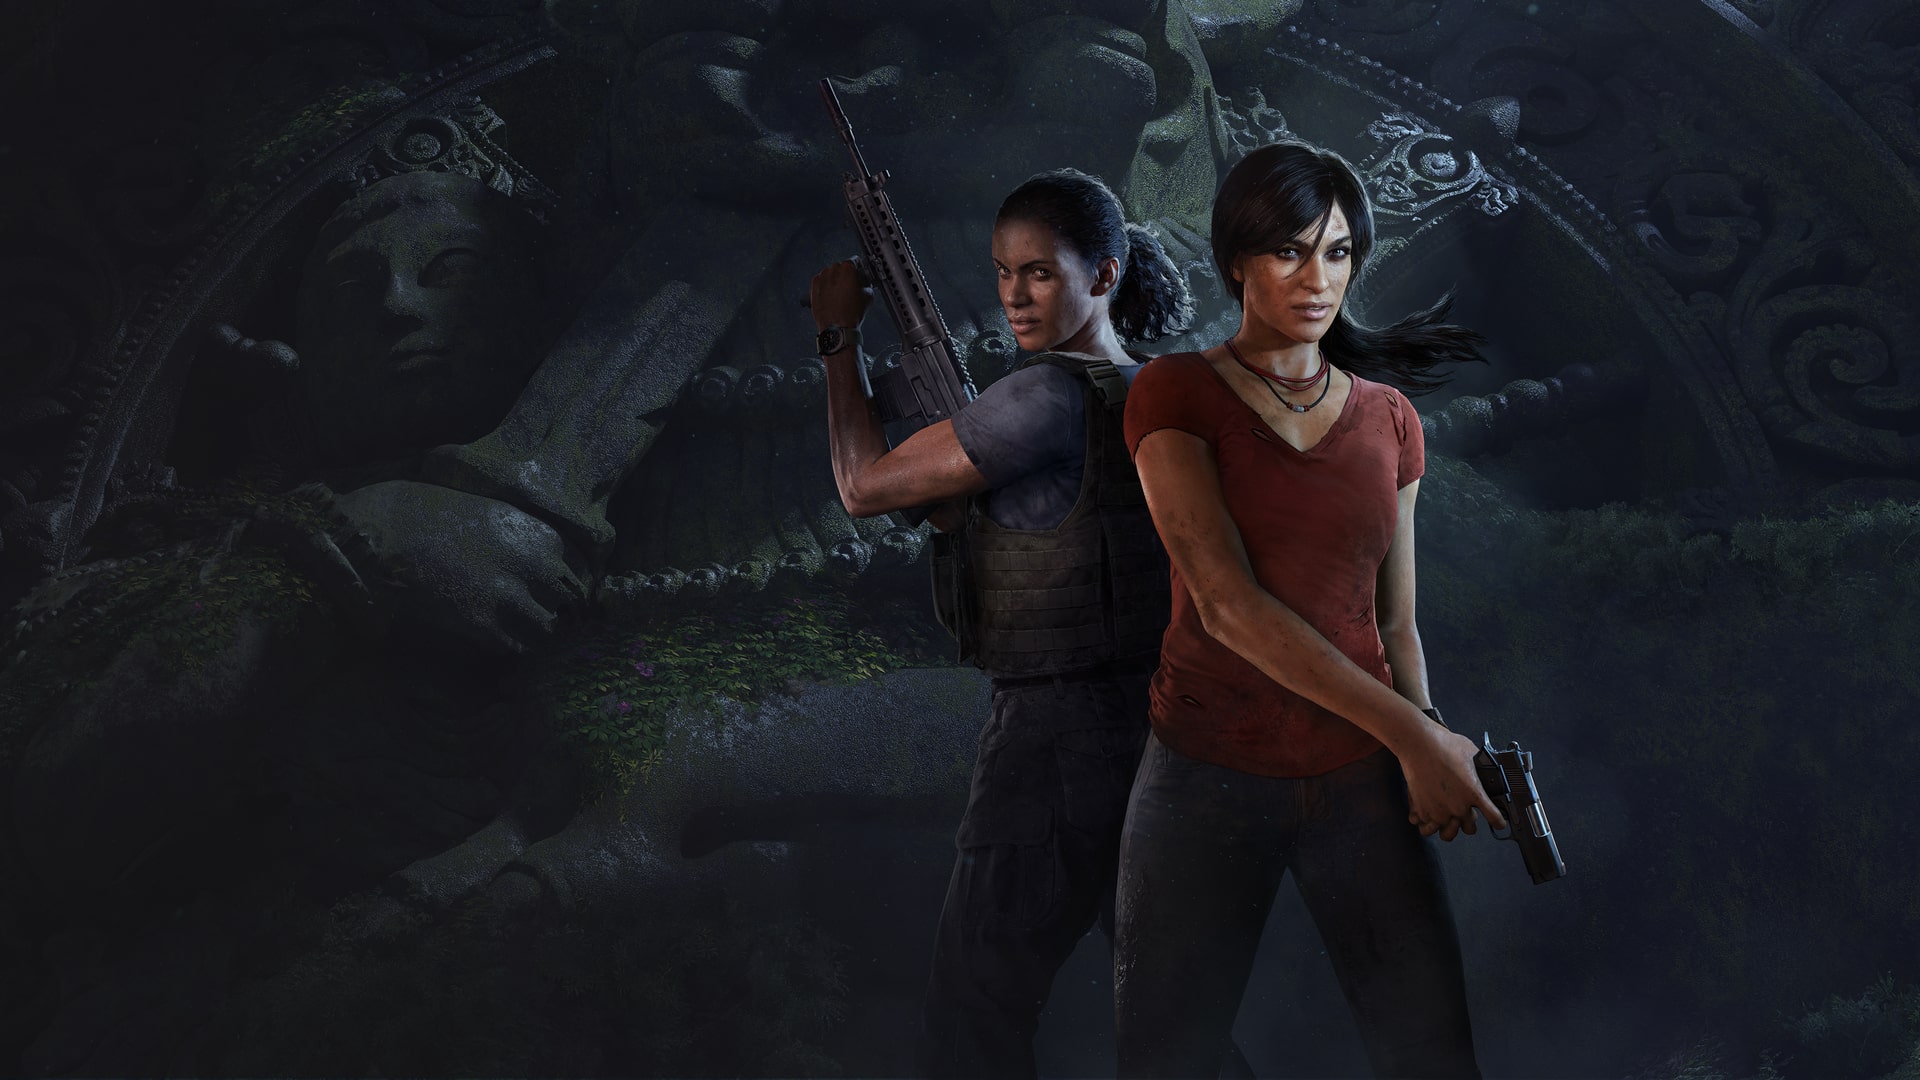 Jogo Uncharted: Coleção Legado dos Ladrões - PS5 - Elite Games